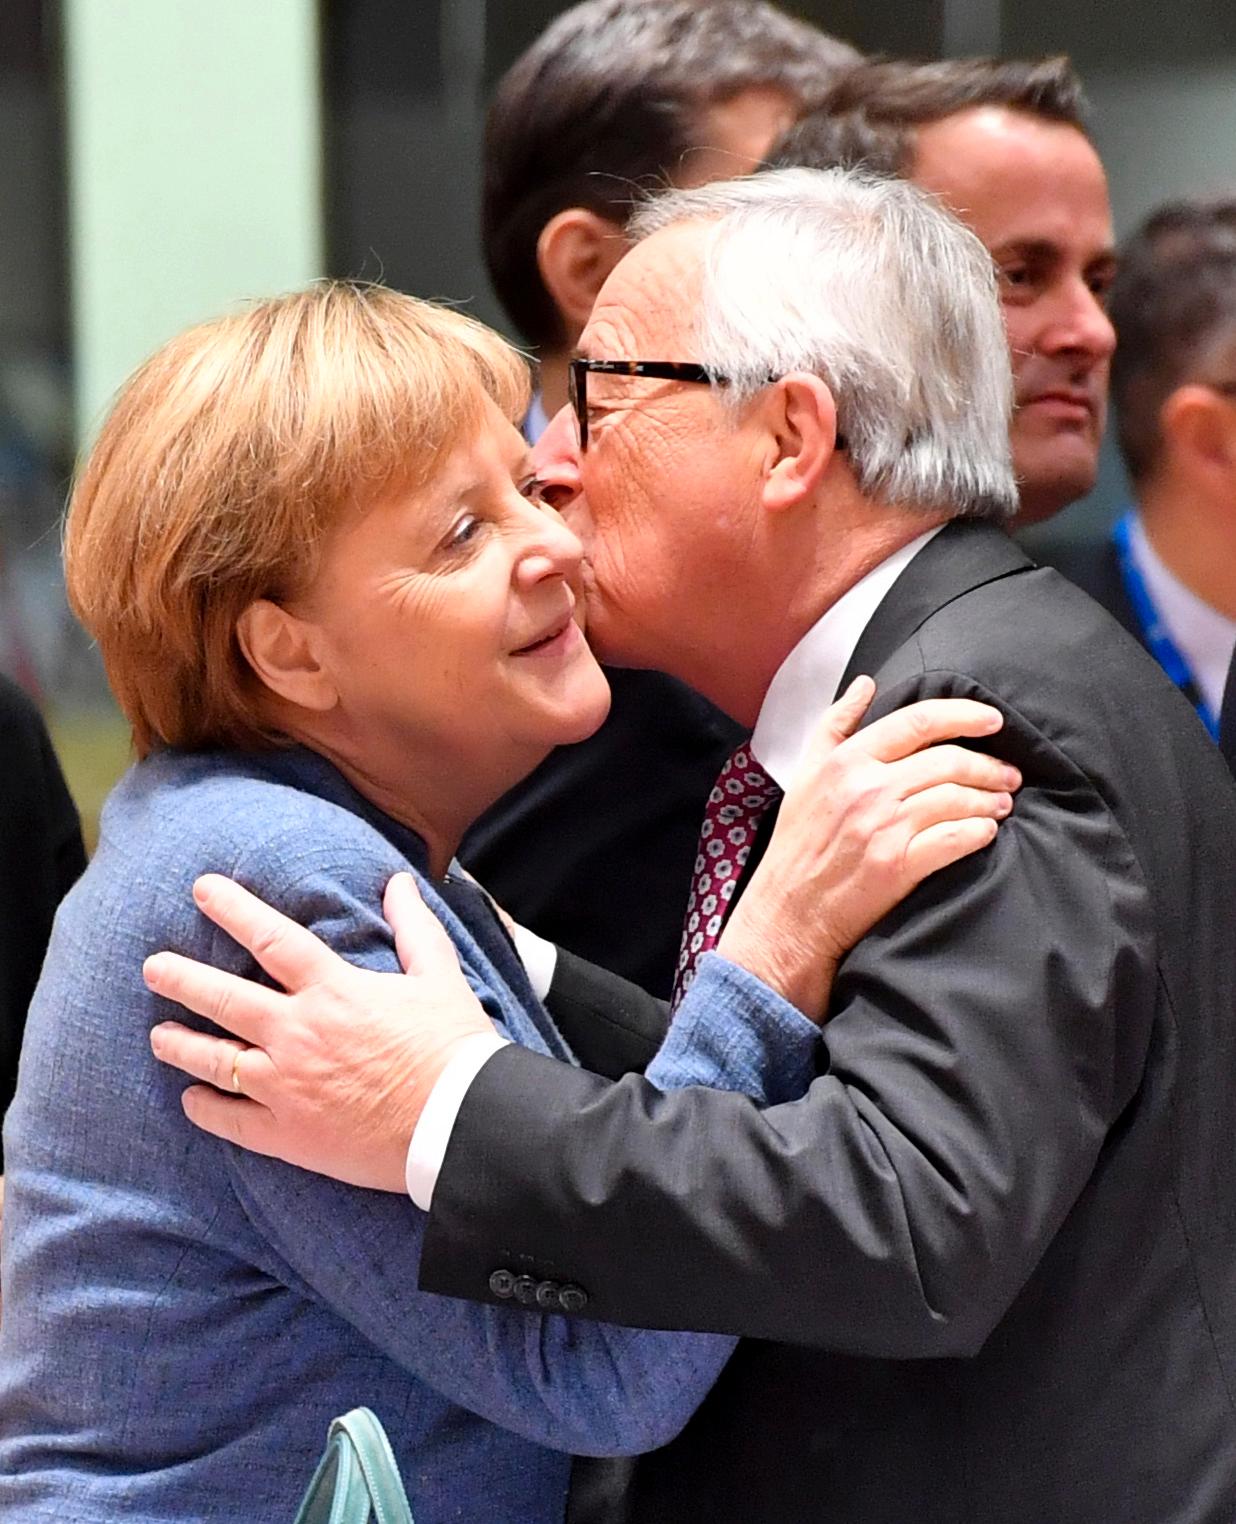 Lettelse også hos forbundskansler Angela Merkel og Tyskland. Merkel truet med ikke å komme til Brussel, om ikke alt var på plass lørdag kveld. Hun fryktet at Gibraltaravtalen kunne skape ny problemer.